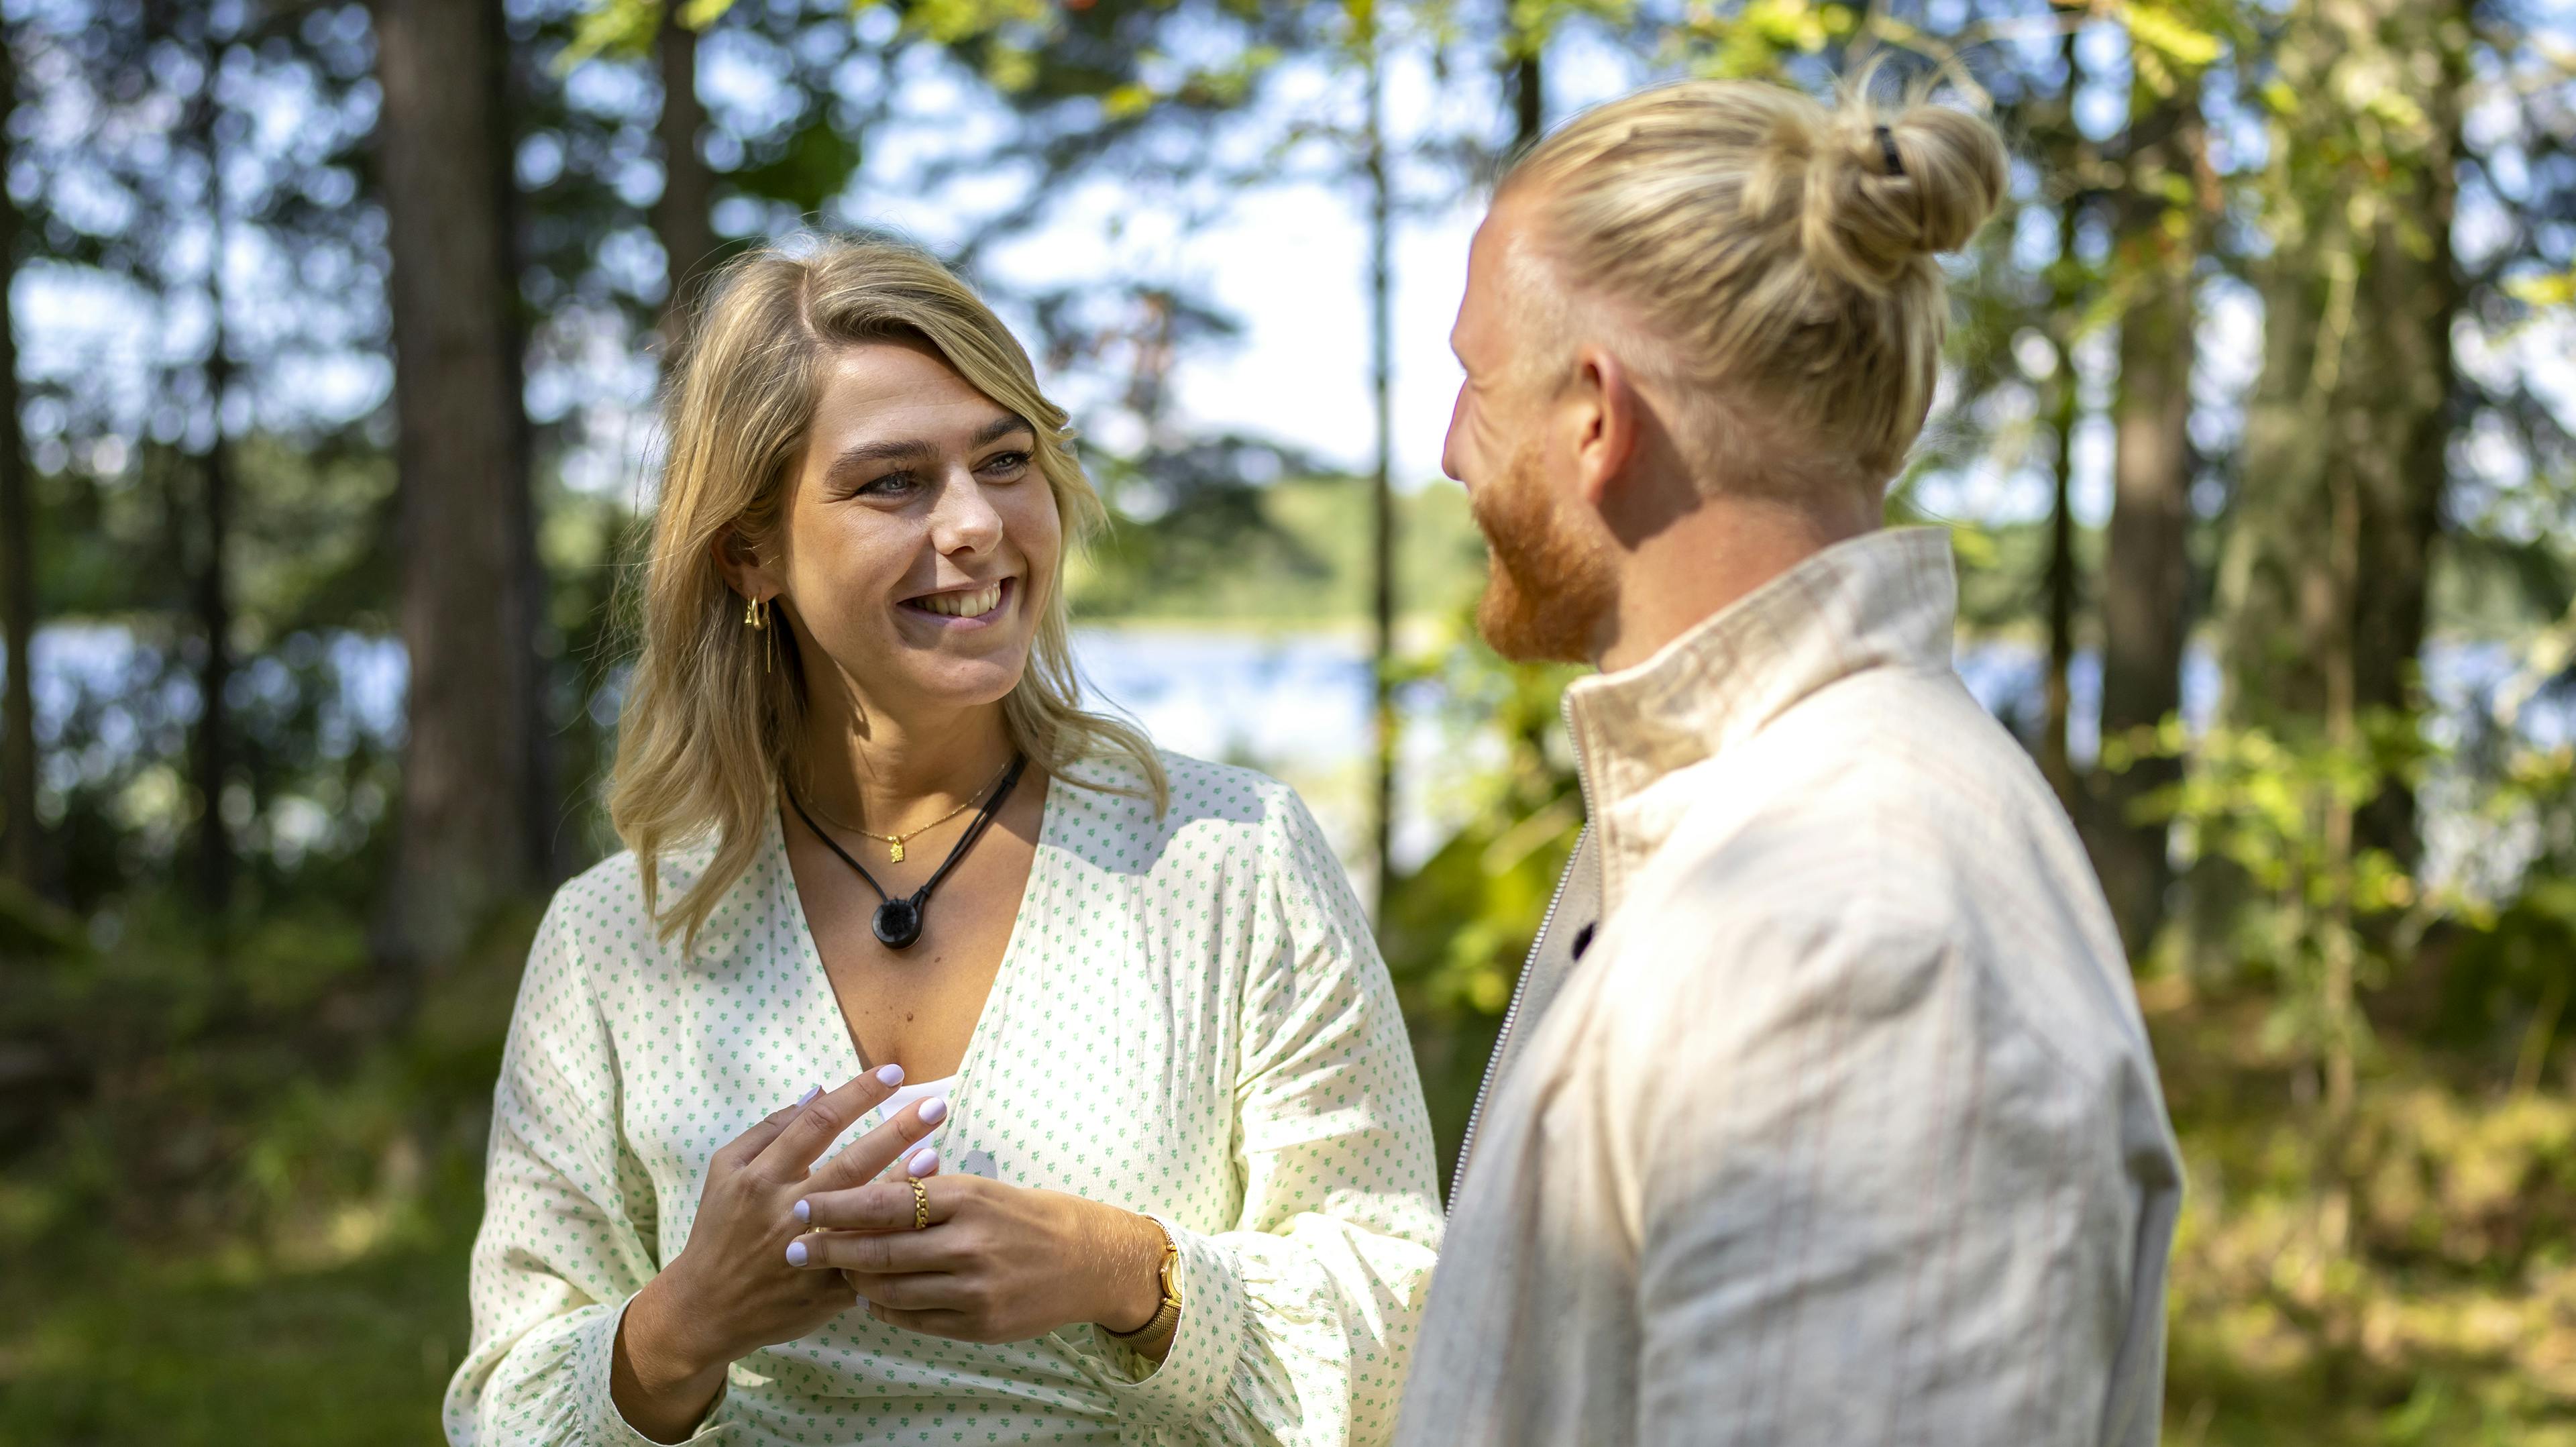 Nanna Elkjær og Morten Damstoft blev matchet i "Alene sammen"
